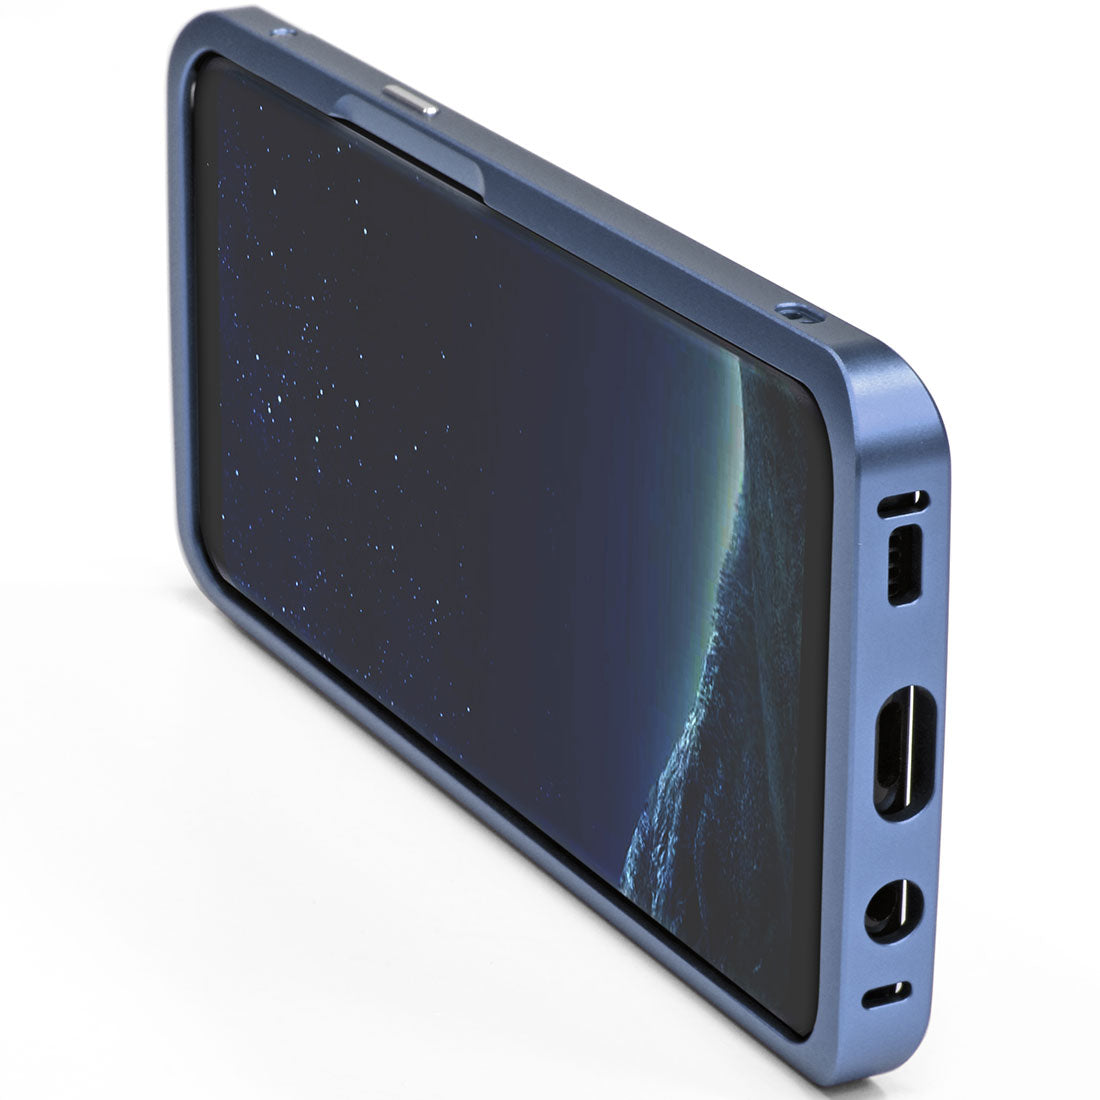 Galaxy S8 aluminum bumper case